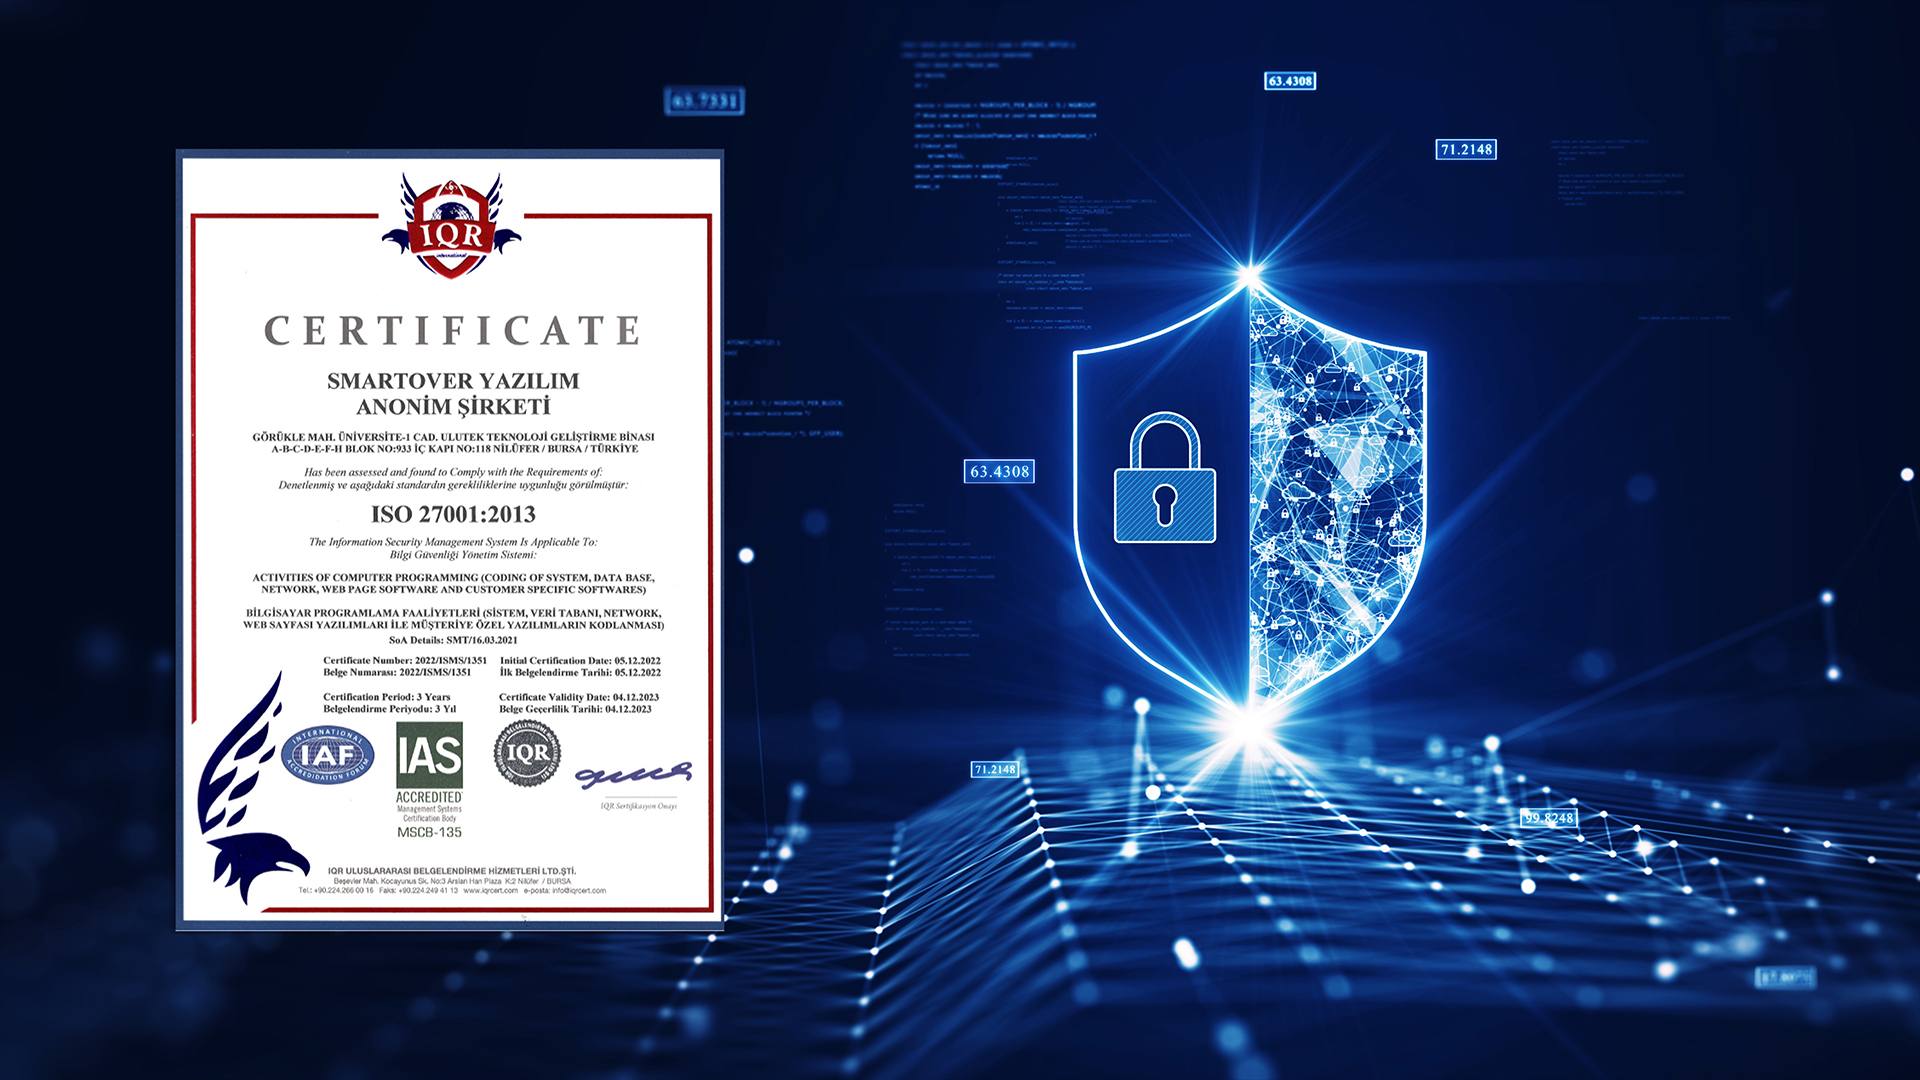 TROWAS, Veri Koruma ve Bilgi Güvenliği Sistemini, ISO 27001:2013 sertifikası ile Belgelendirdi.